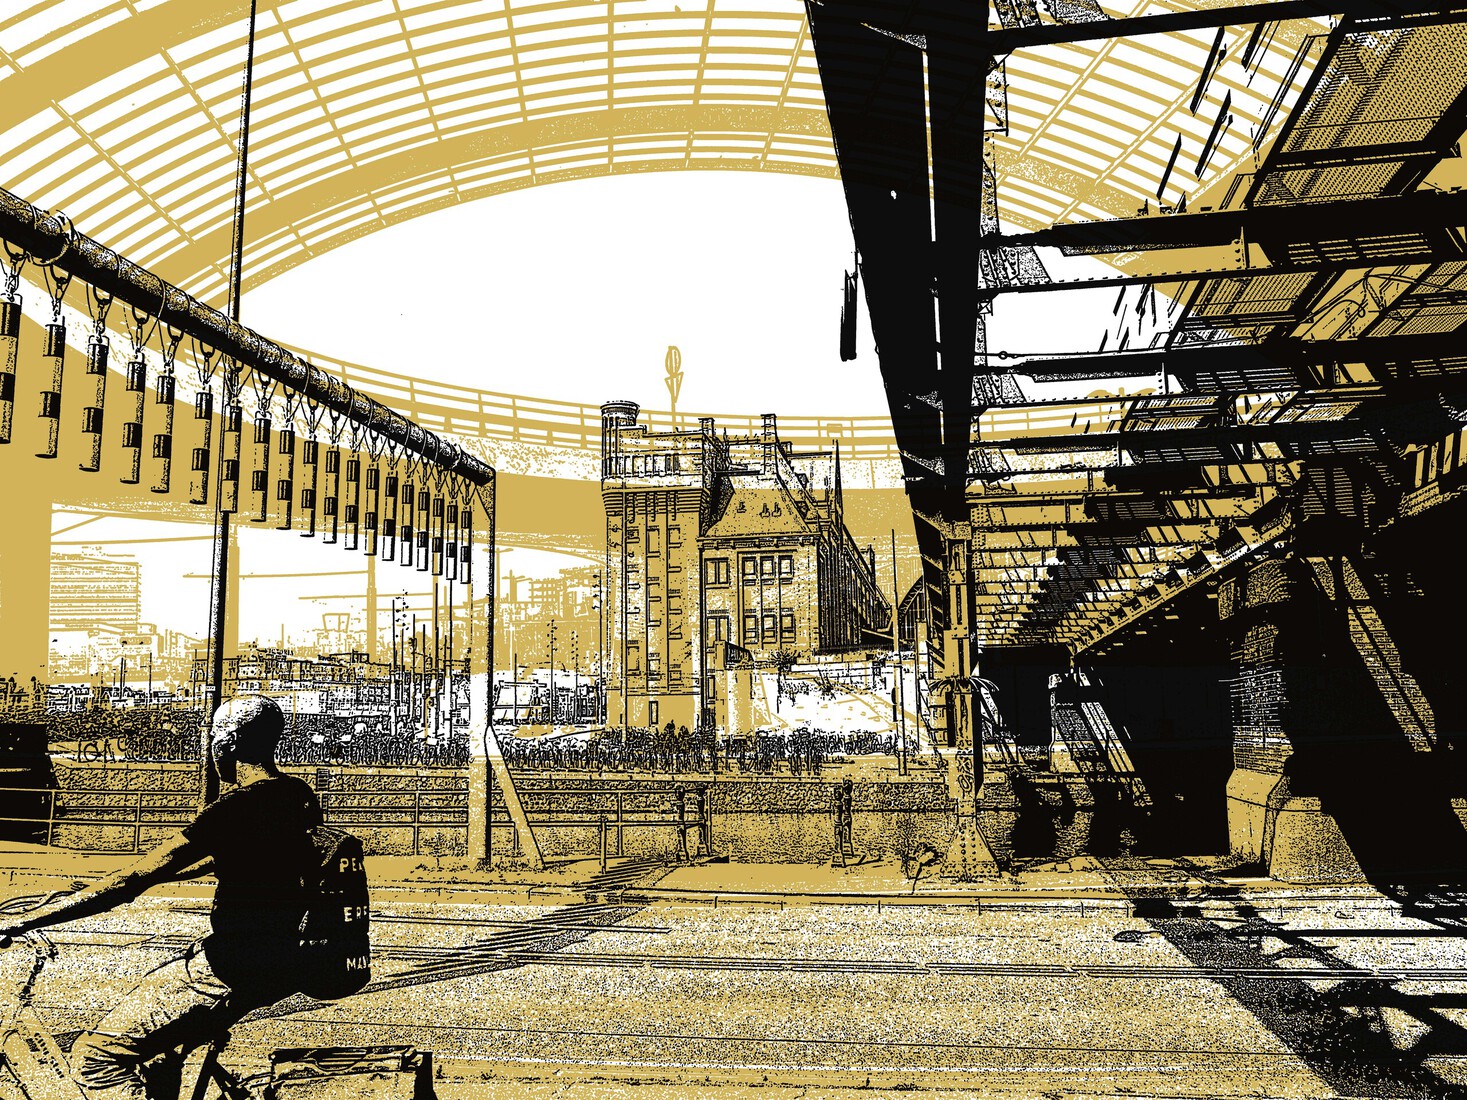   Spoorbrug Amsterdam cs 1,- digitale art print